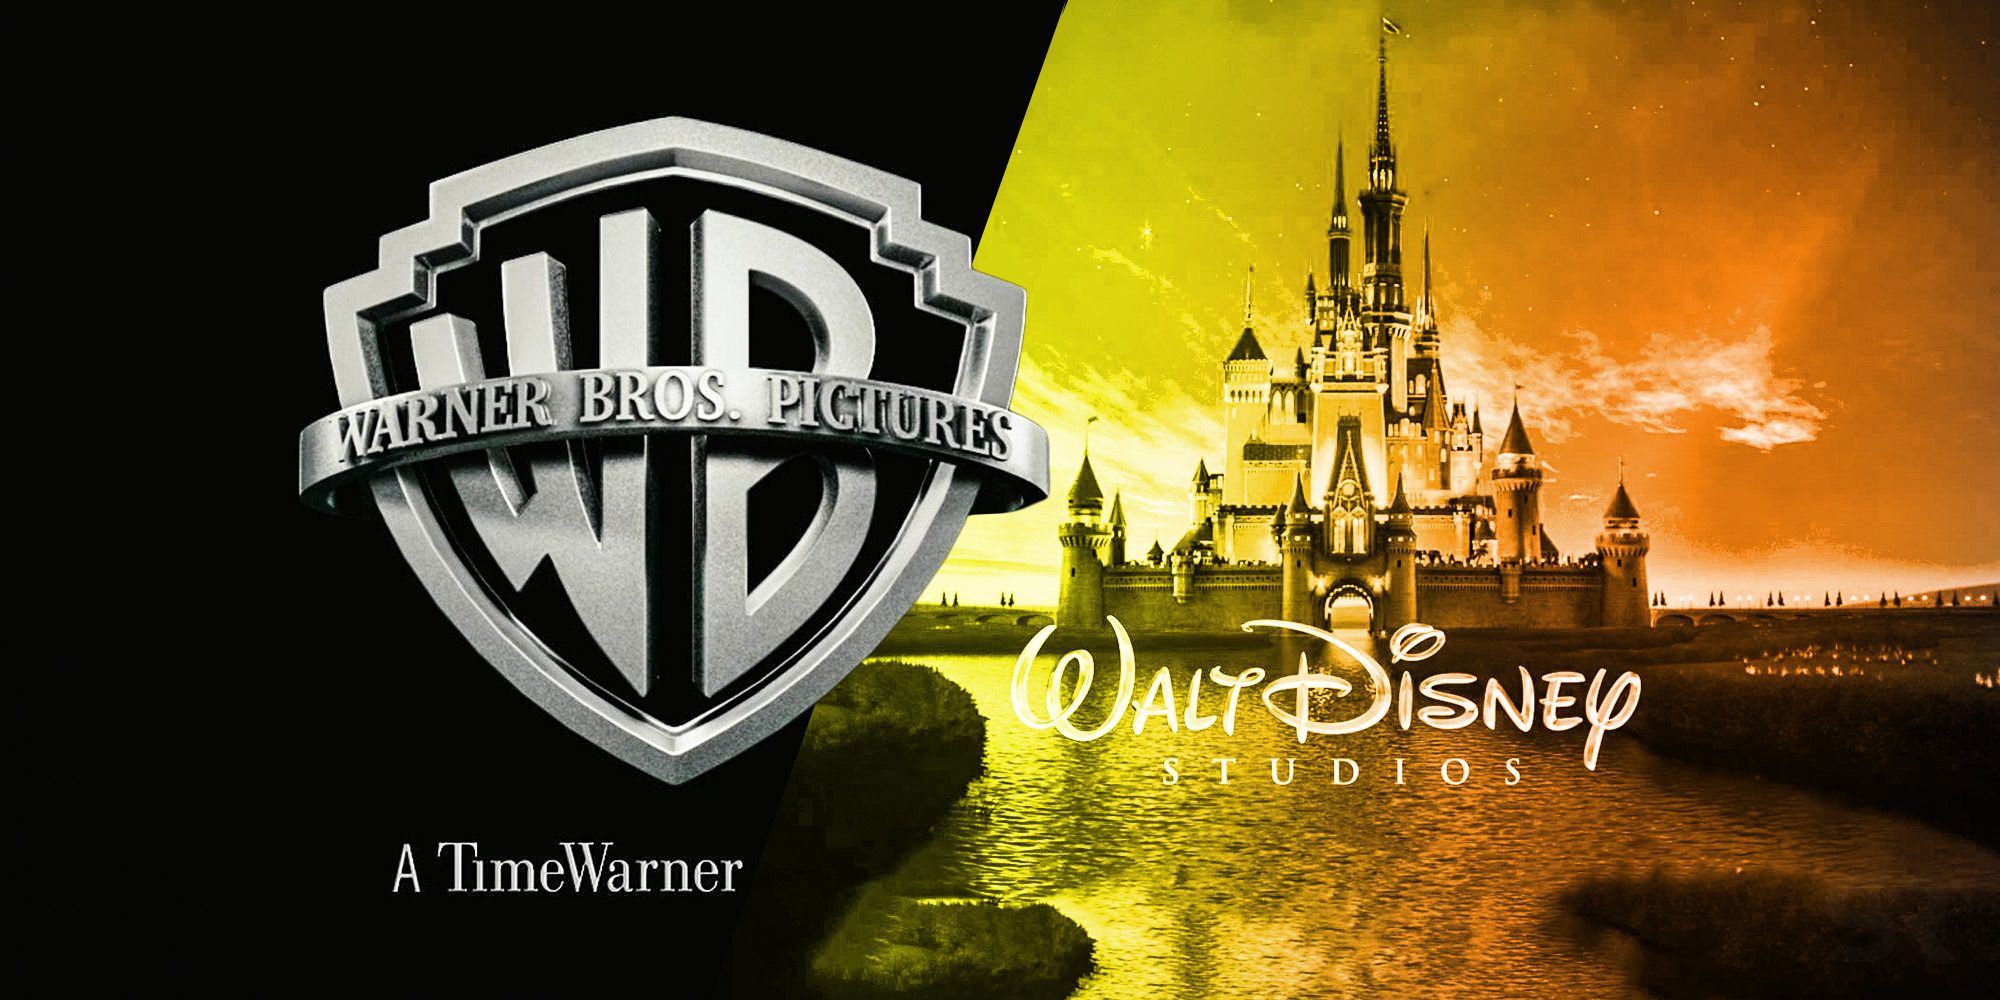 What if Disney bought Warner Bros